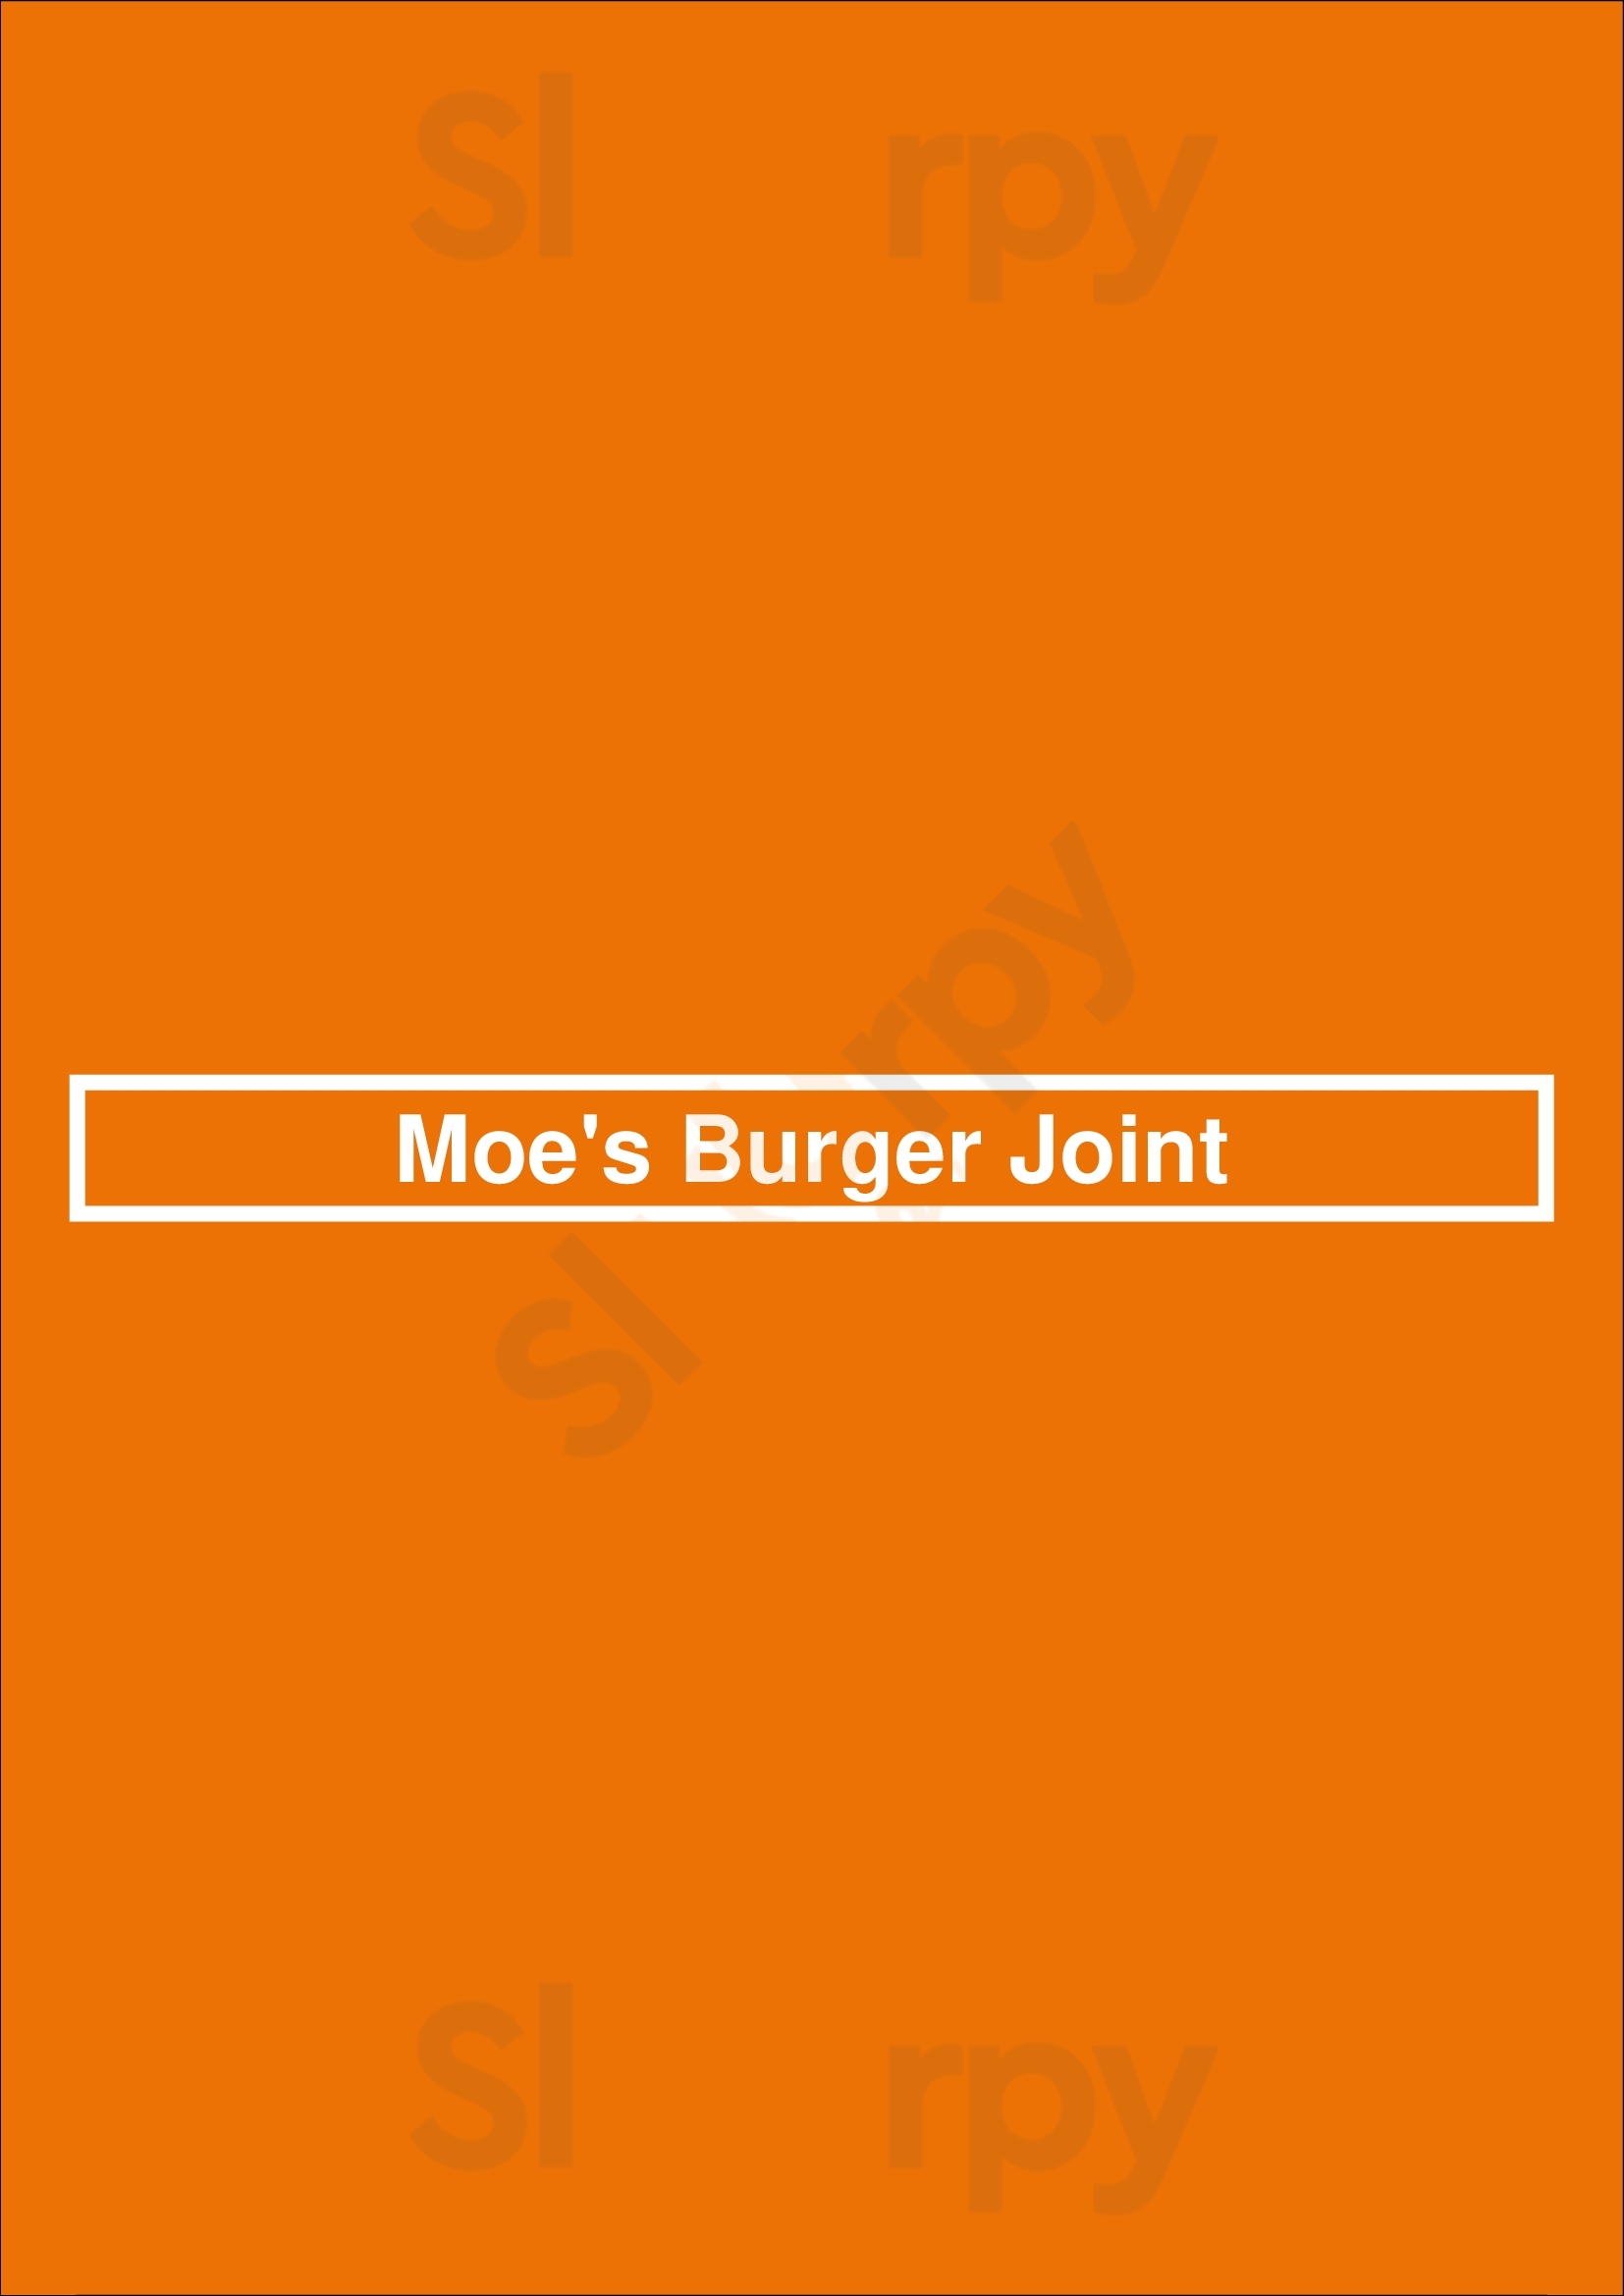 Moe's Burger Joint Bridgeport Menu - 1